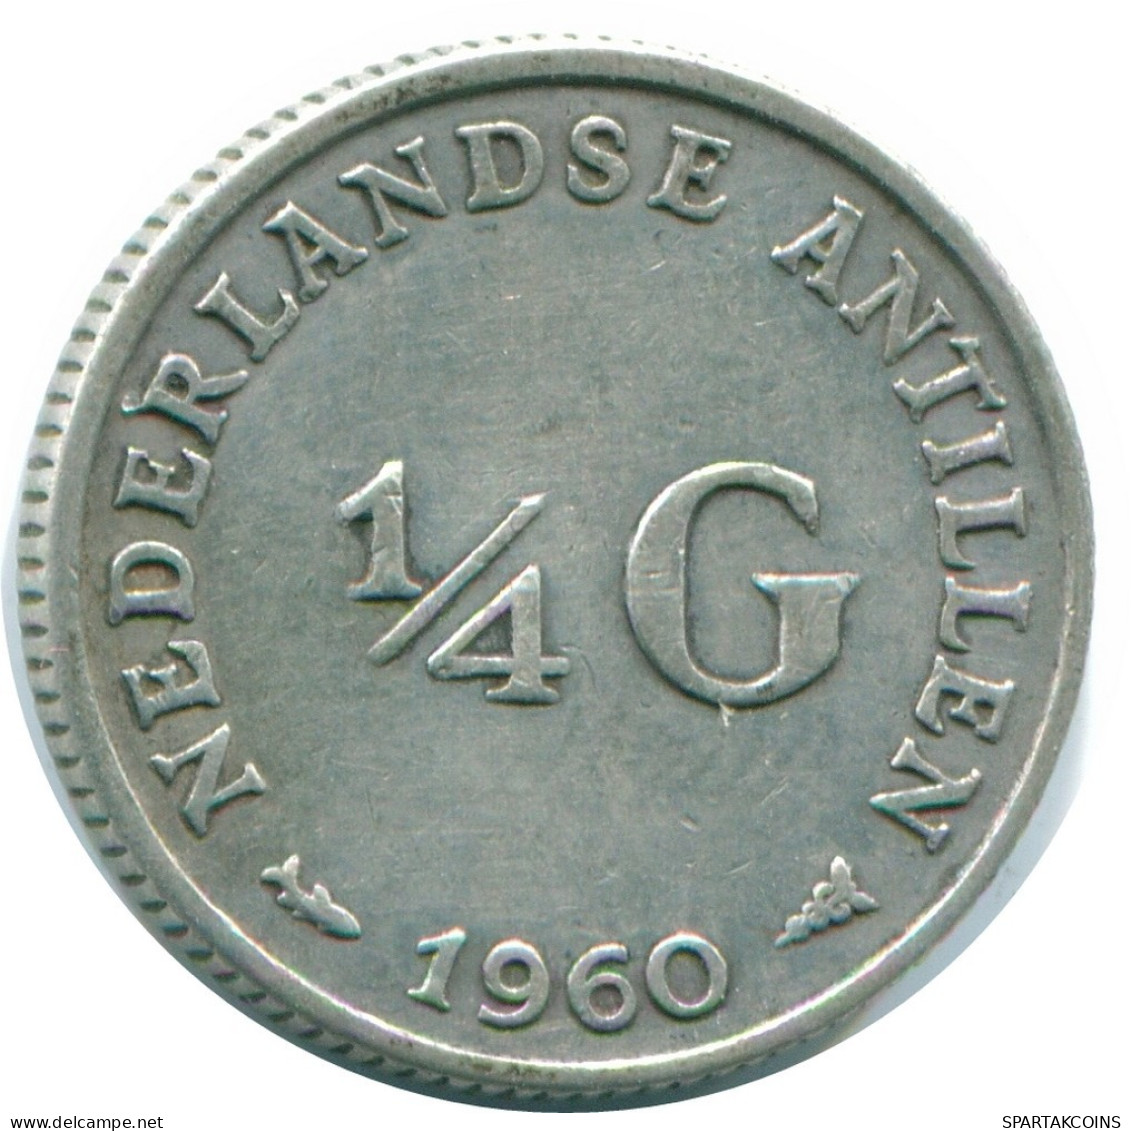 1/4 GULDEN 1960 NIEDERLÄNDISCHE ANTILLEN SILBER Koloniale Münze #NL11054.4.D.A - Nederlandse Antillen